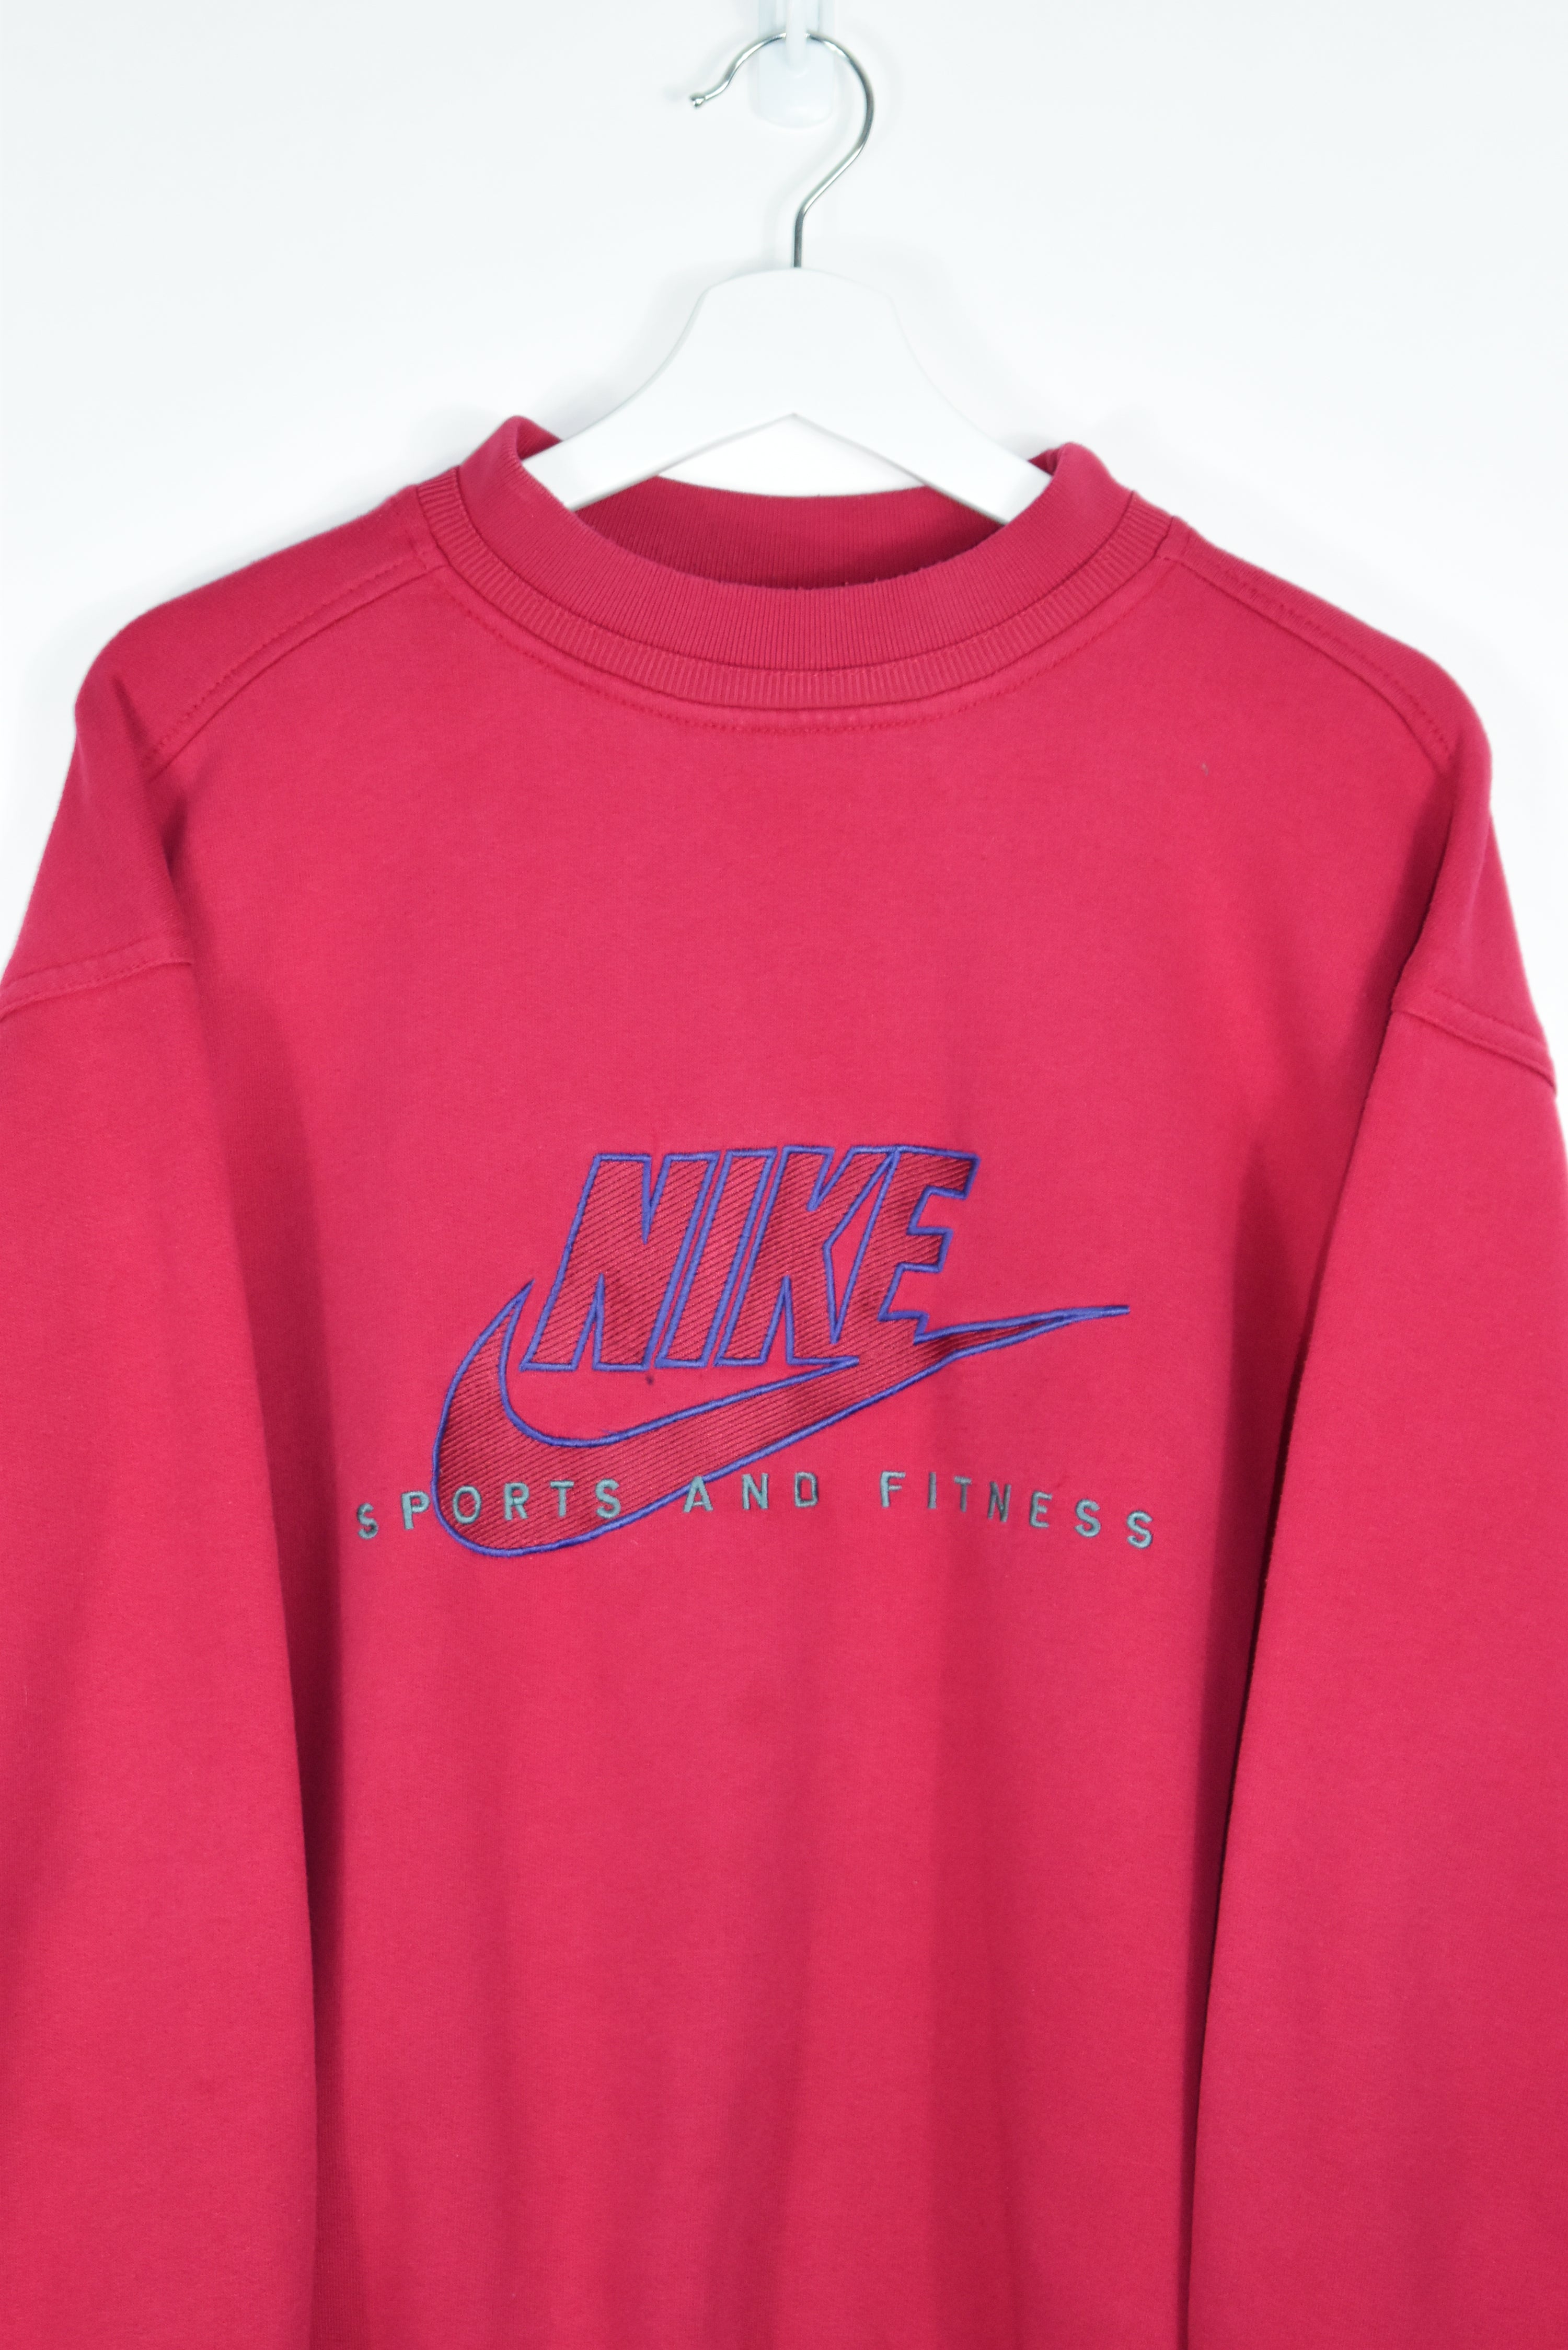 Vintage Nike Retro Embroidery Sweatshirt MEDIUM /L